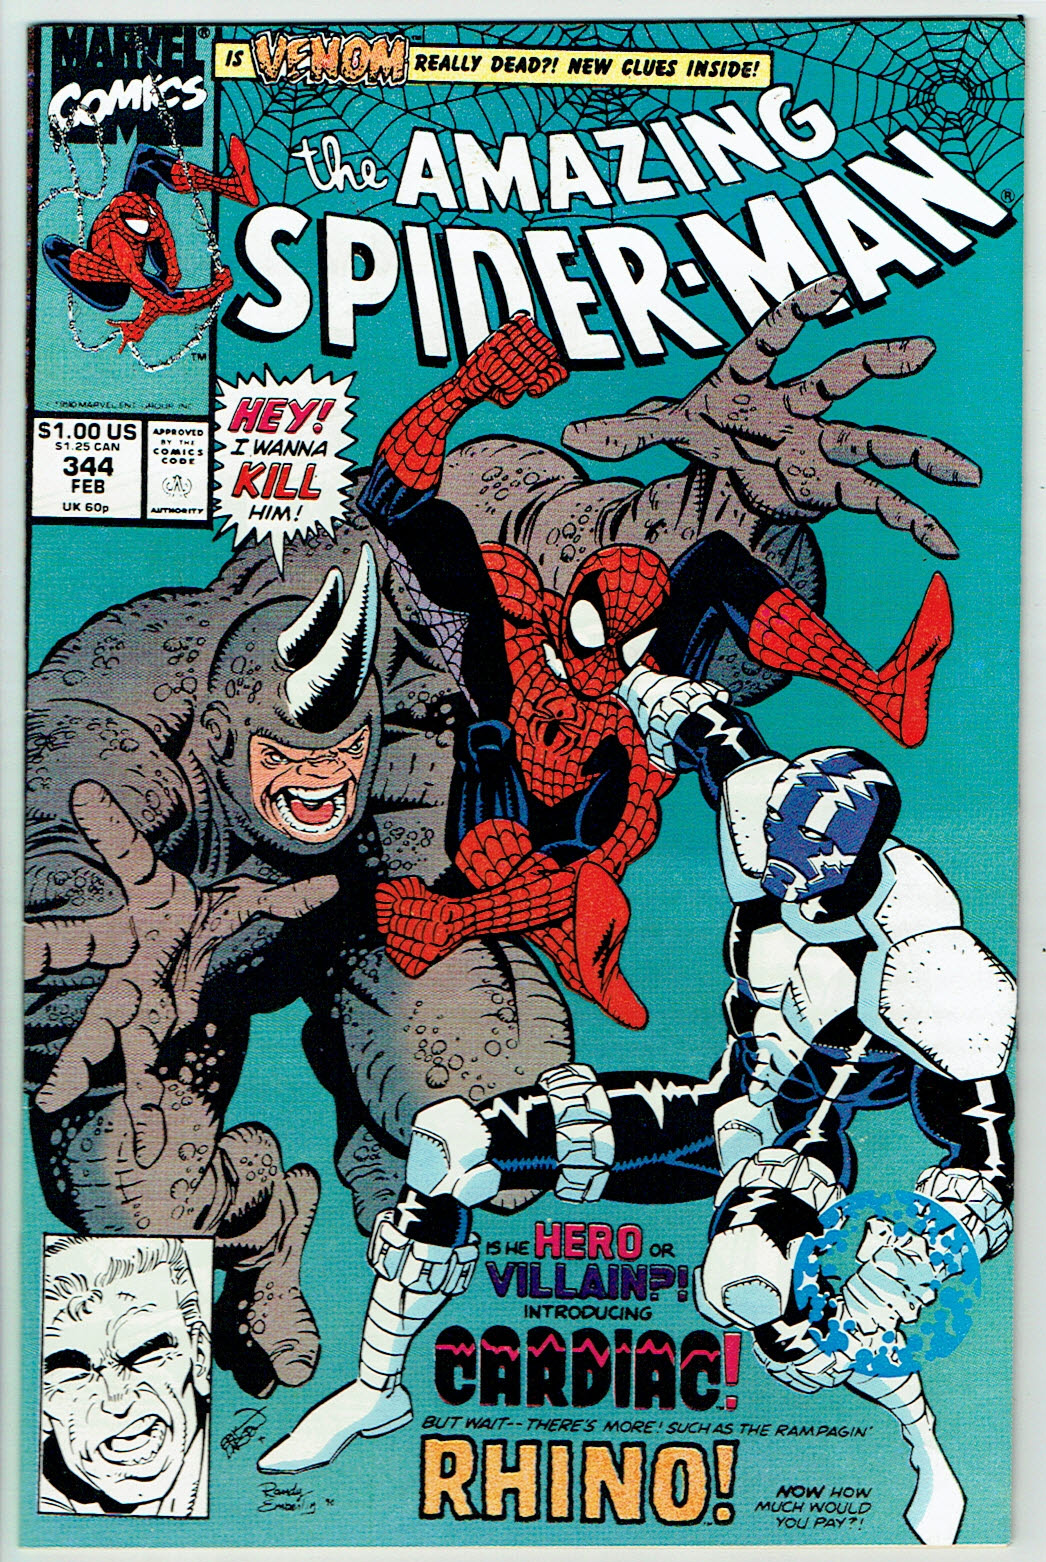 Amazing Spider-Man #344